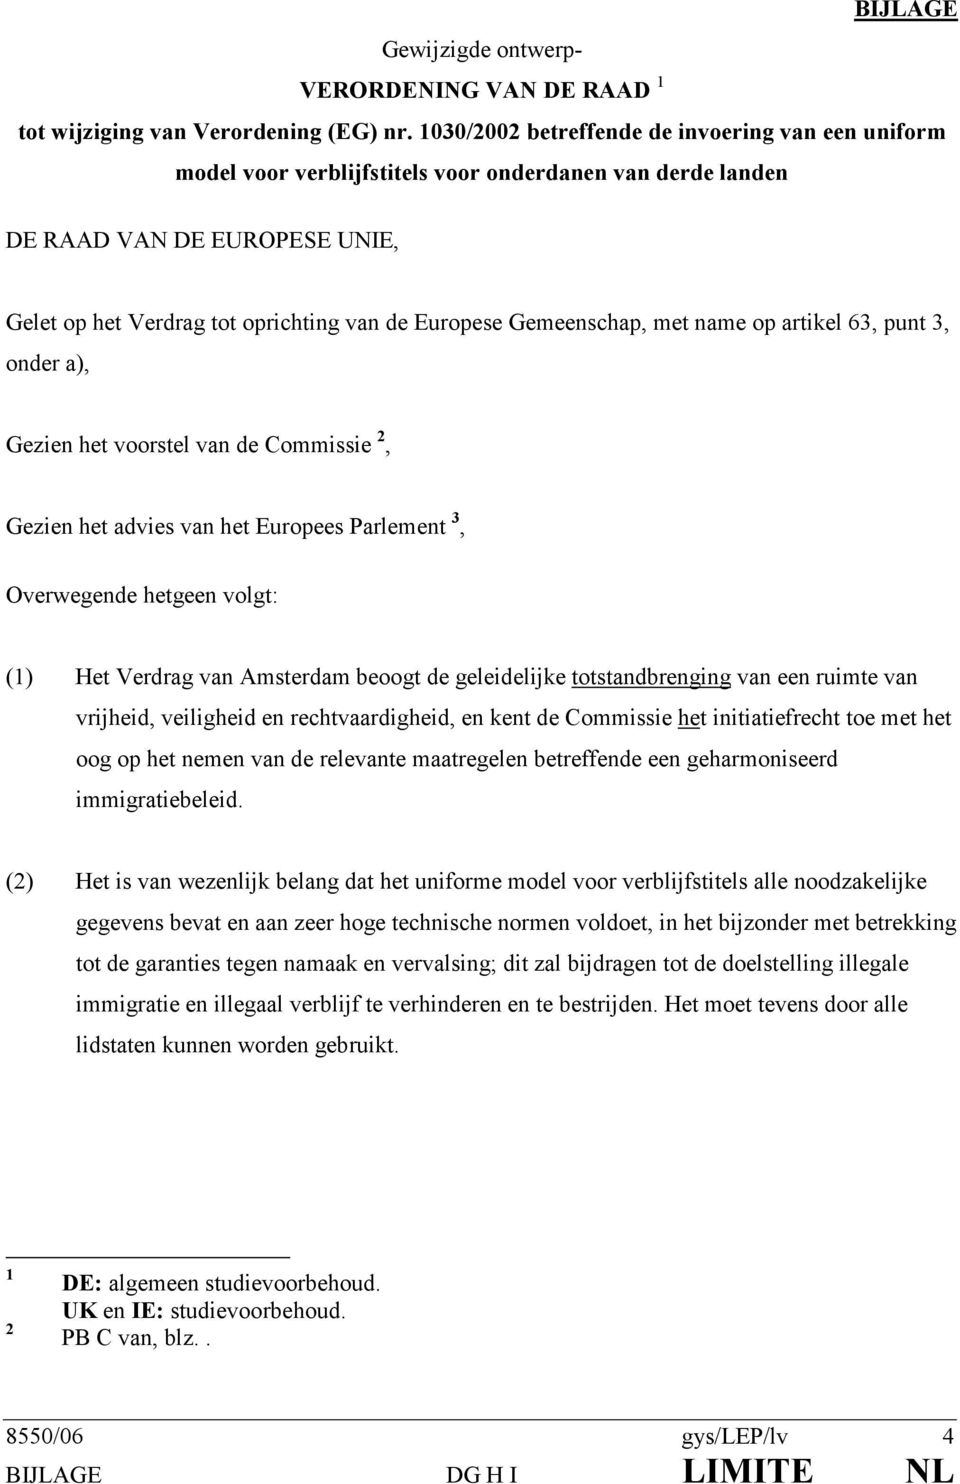 Gemeenschap, met name op artikel 63, punt 3, onder a), Gezien het voorstel van de Commissie 2, Gezien het advies van het Europees Parlement 3, Overwegende hetgeen volgt: (1) Het Verdrag van Amsterdam